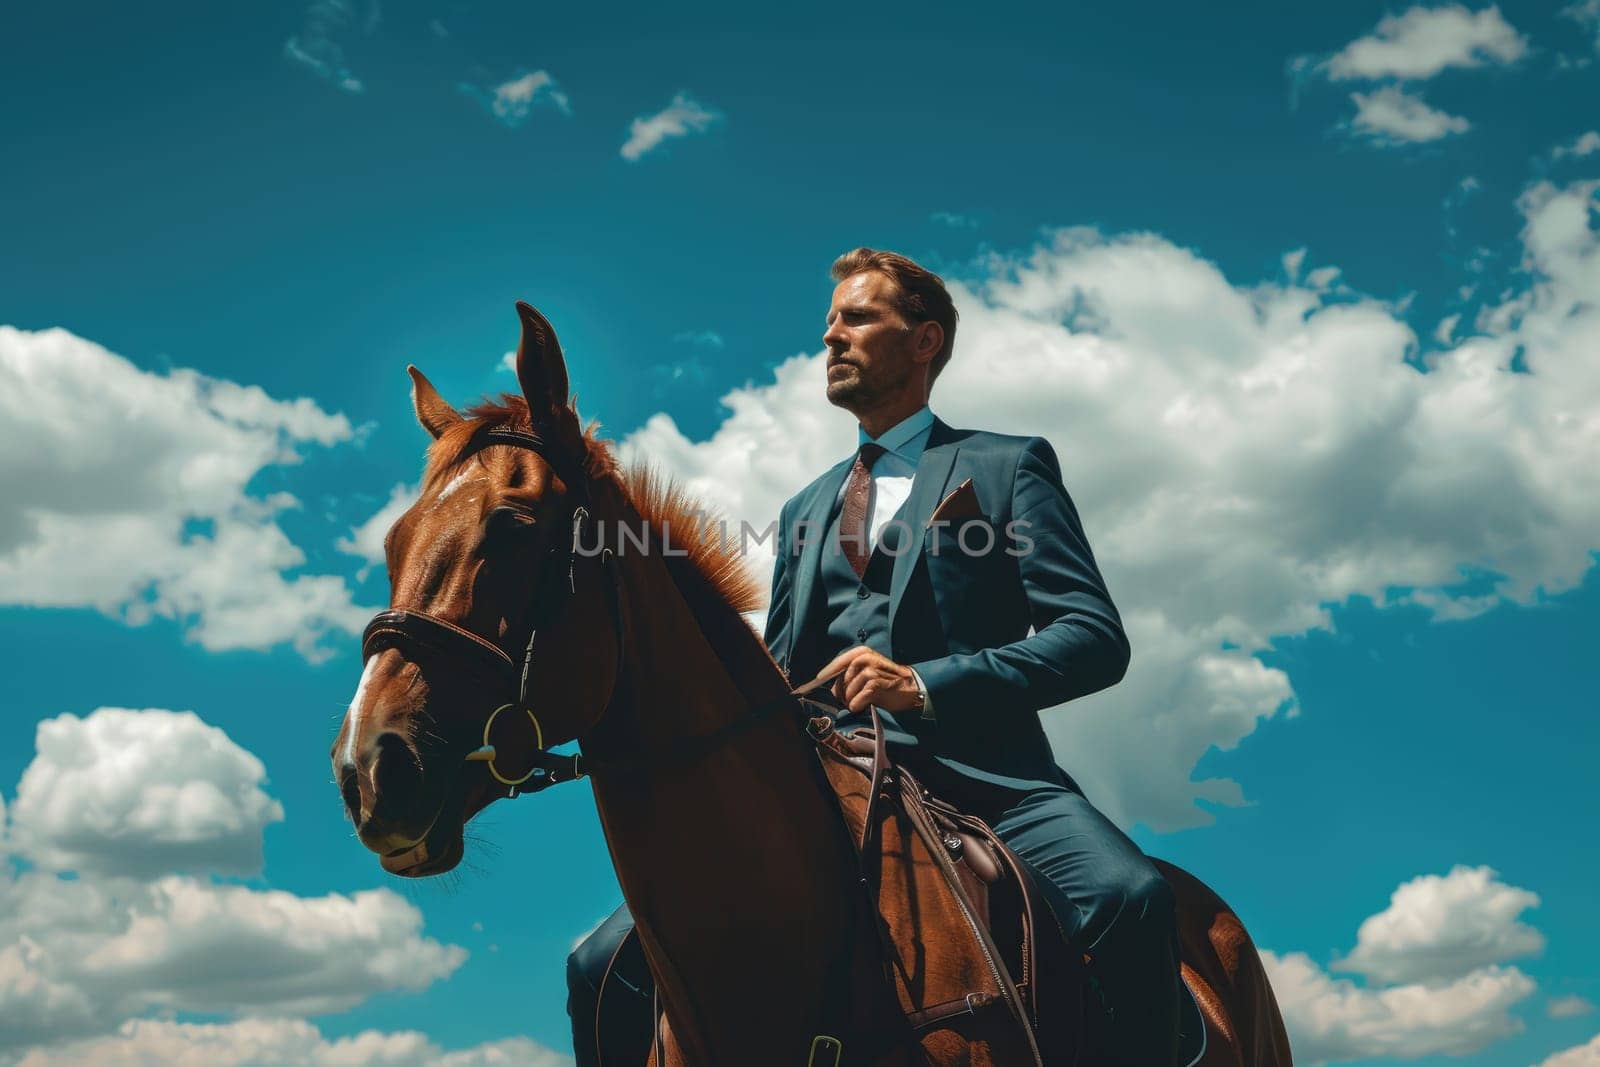 Businessman in suit on horseback, Well dressed man on horseback by nijieimu